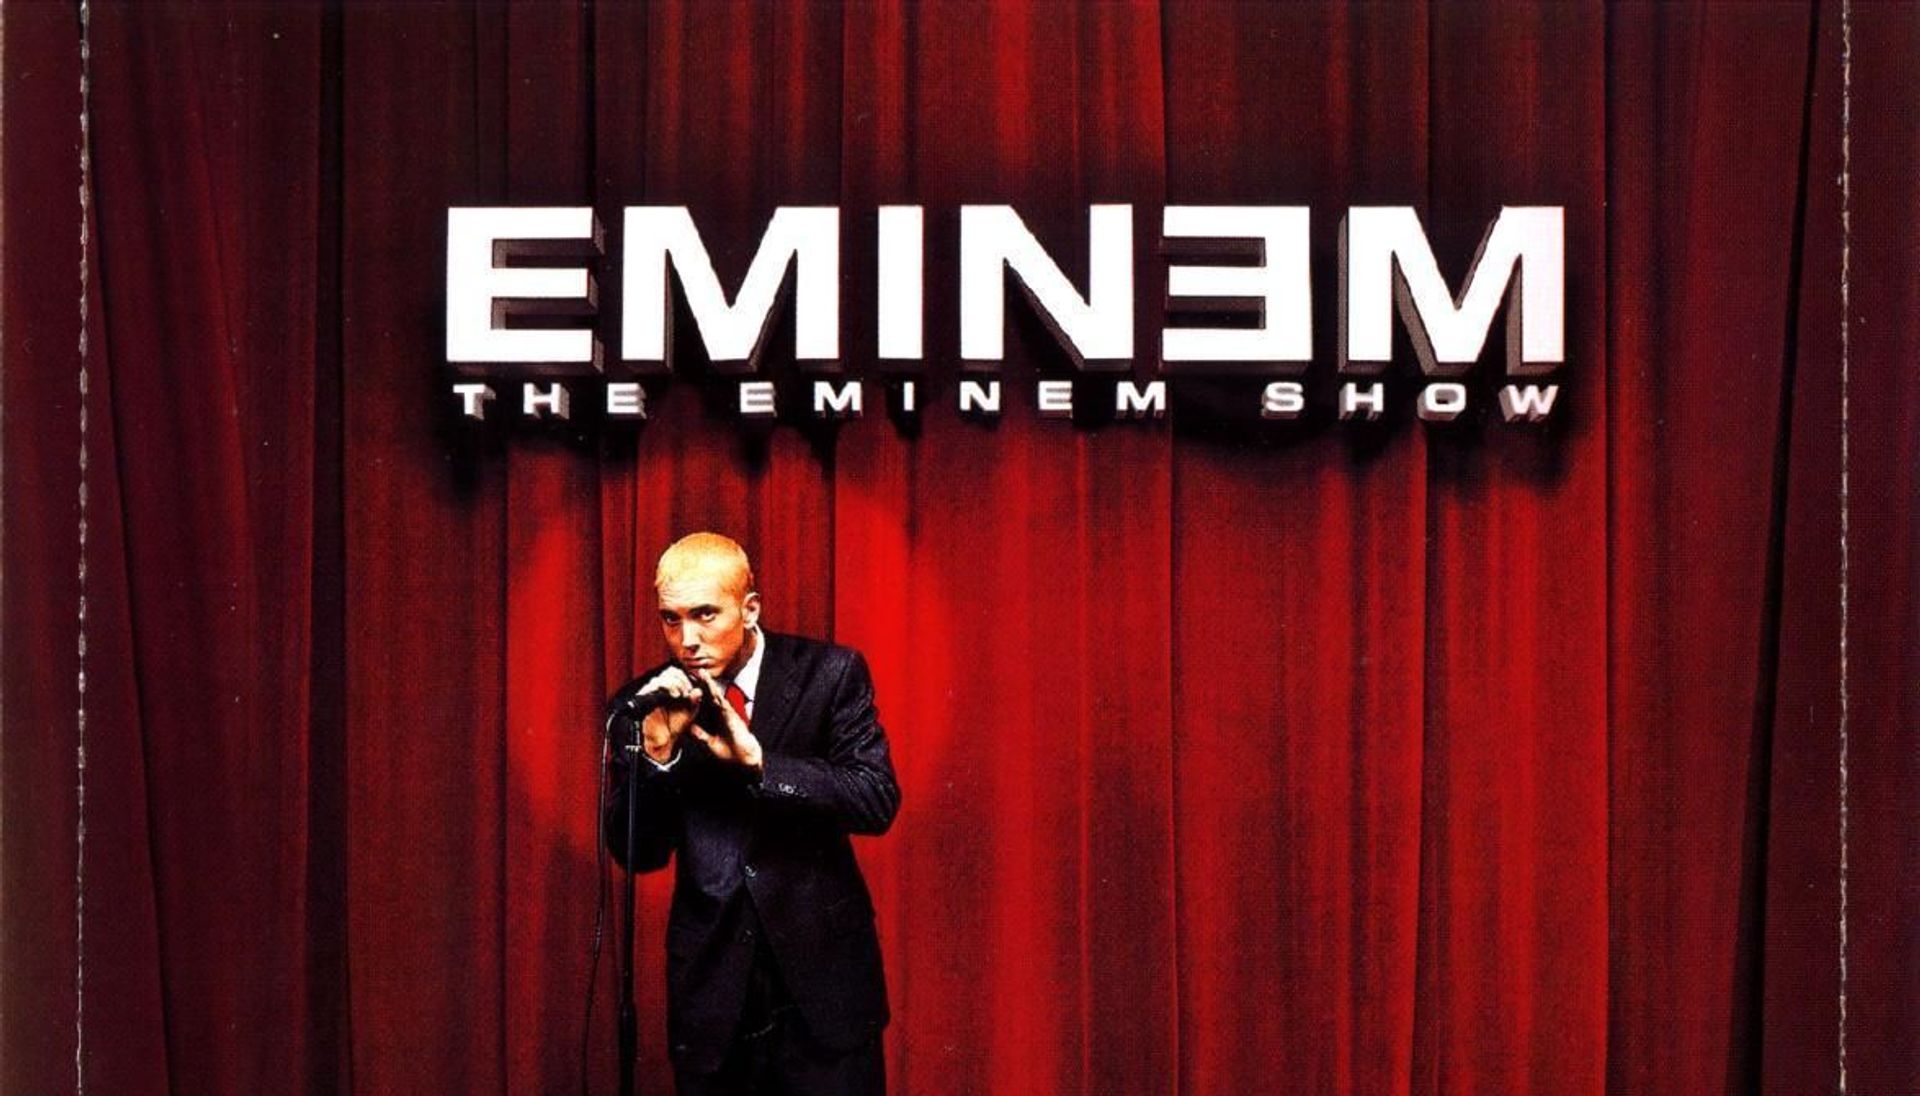 Eminem announces an extended version of his album ‘The Eminem Show’